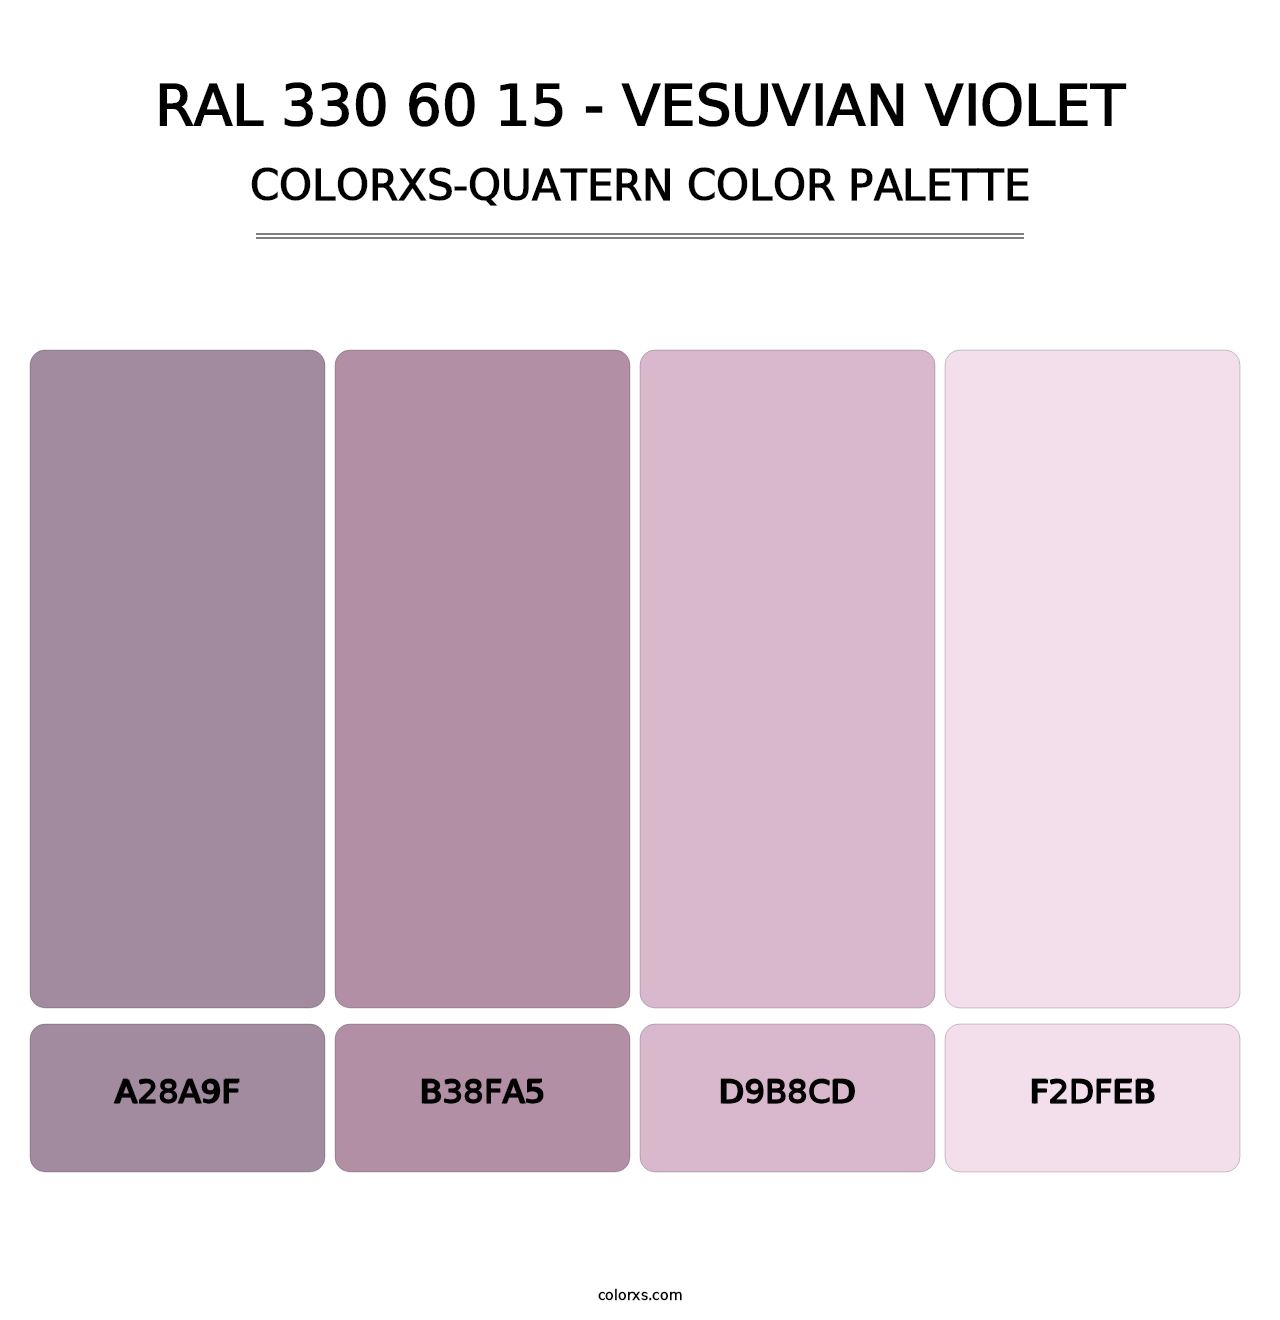 RAL 330 60 15 - Vesuvian Violet - Colorxs Quatern Palette